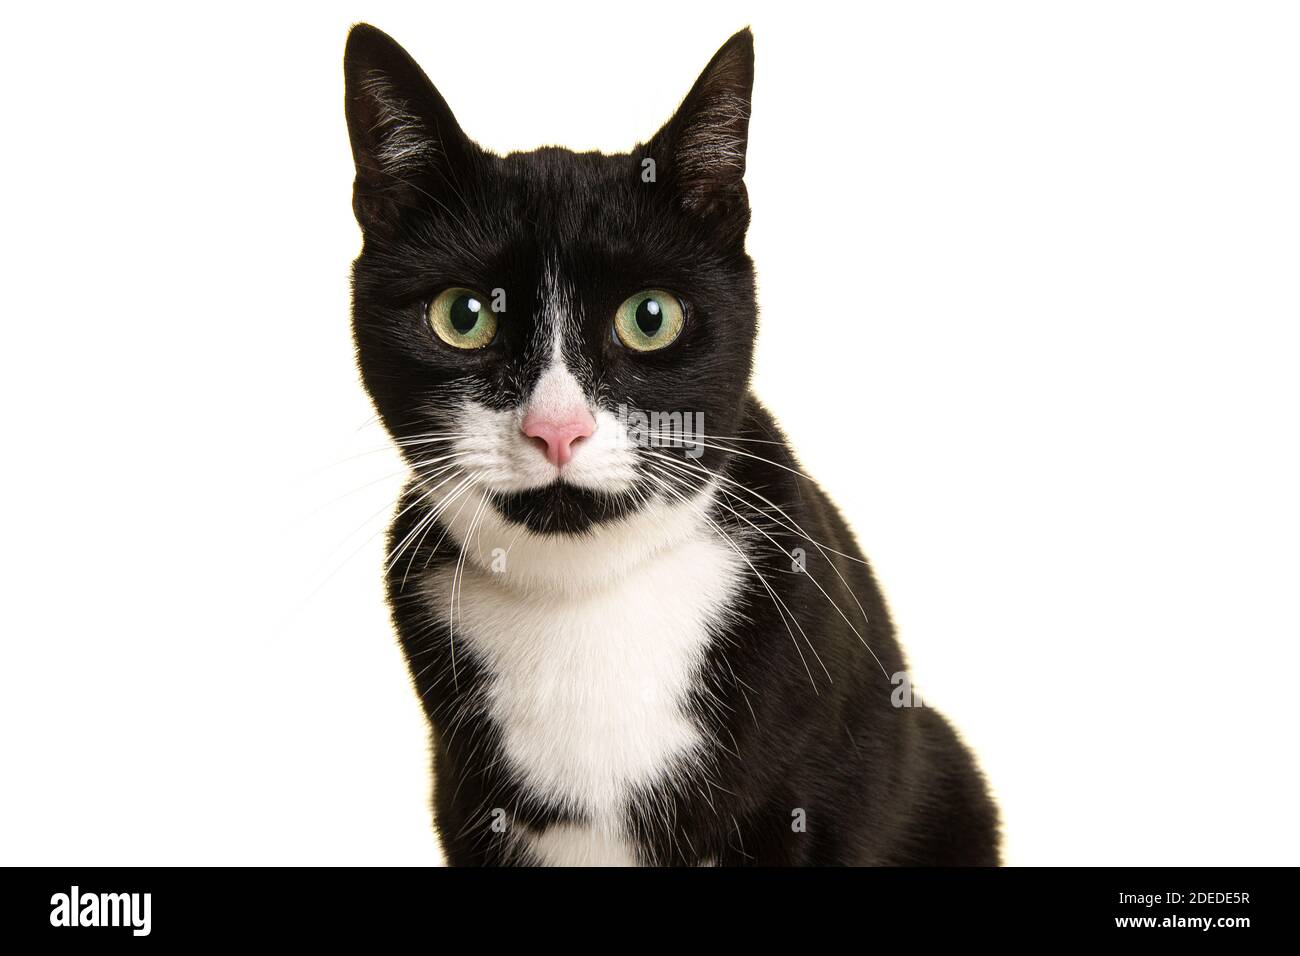 Portrait einer hübschen schwarz-weißen Katze, die sich nach vorne lehnt Blick direkt auf die Kamera isoliert auf weißem Hintergrund Stockfoto